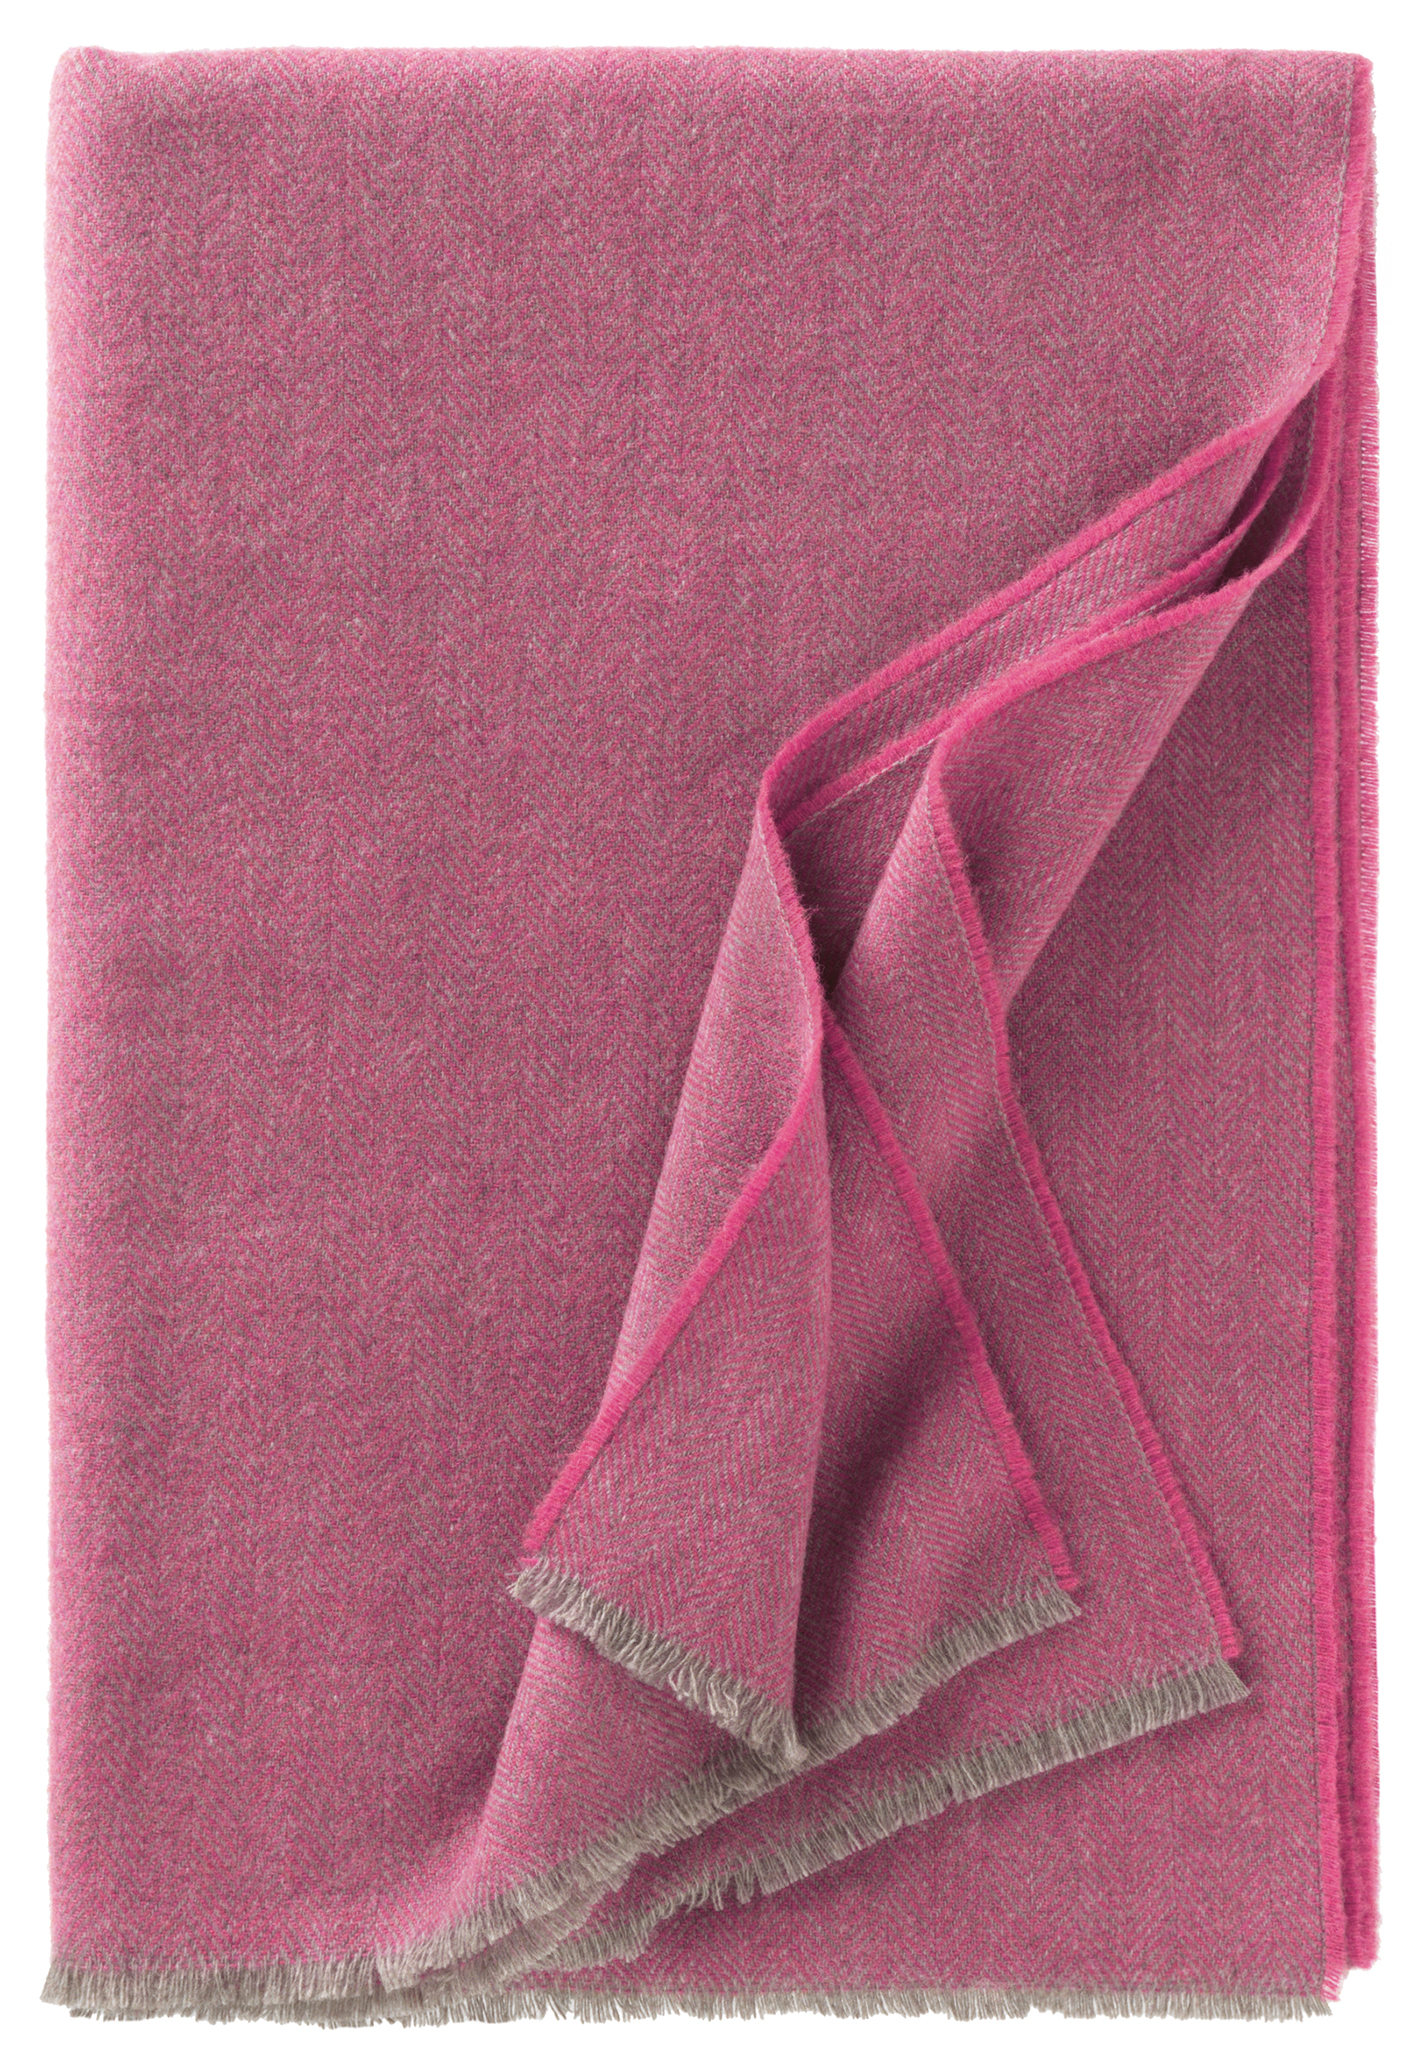 Bild von Torino108, Variante pink